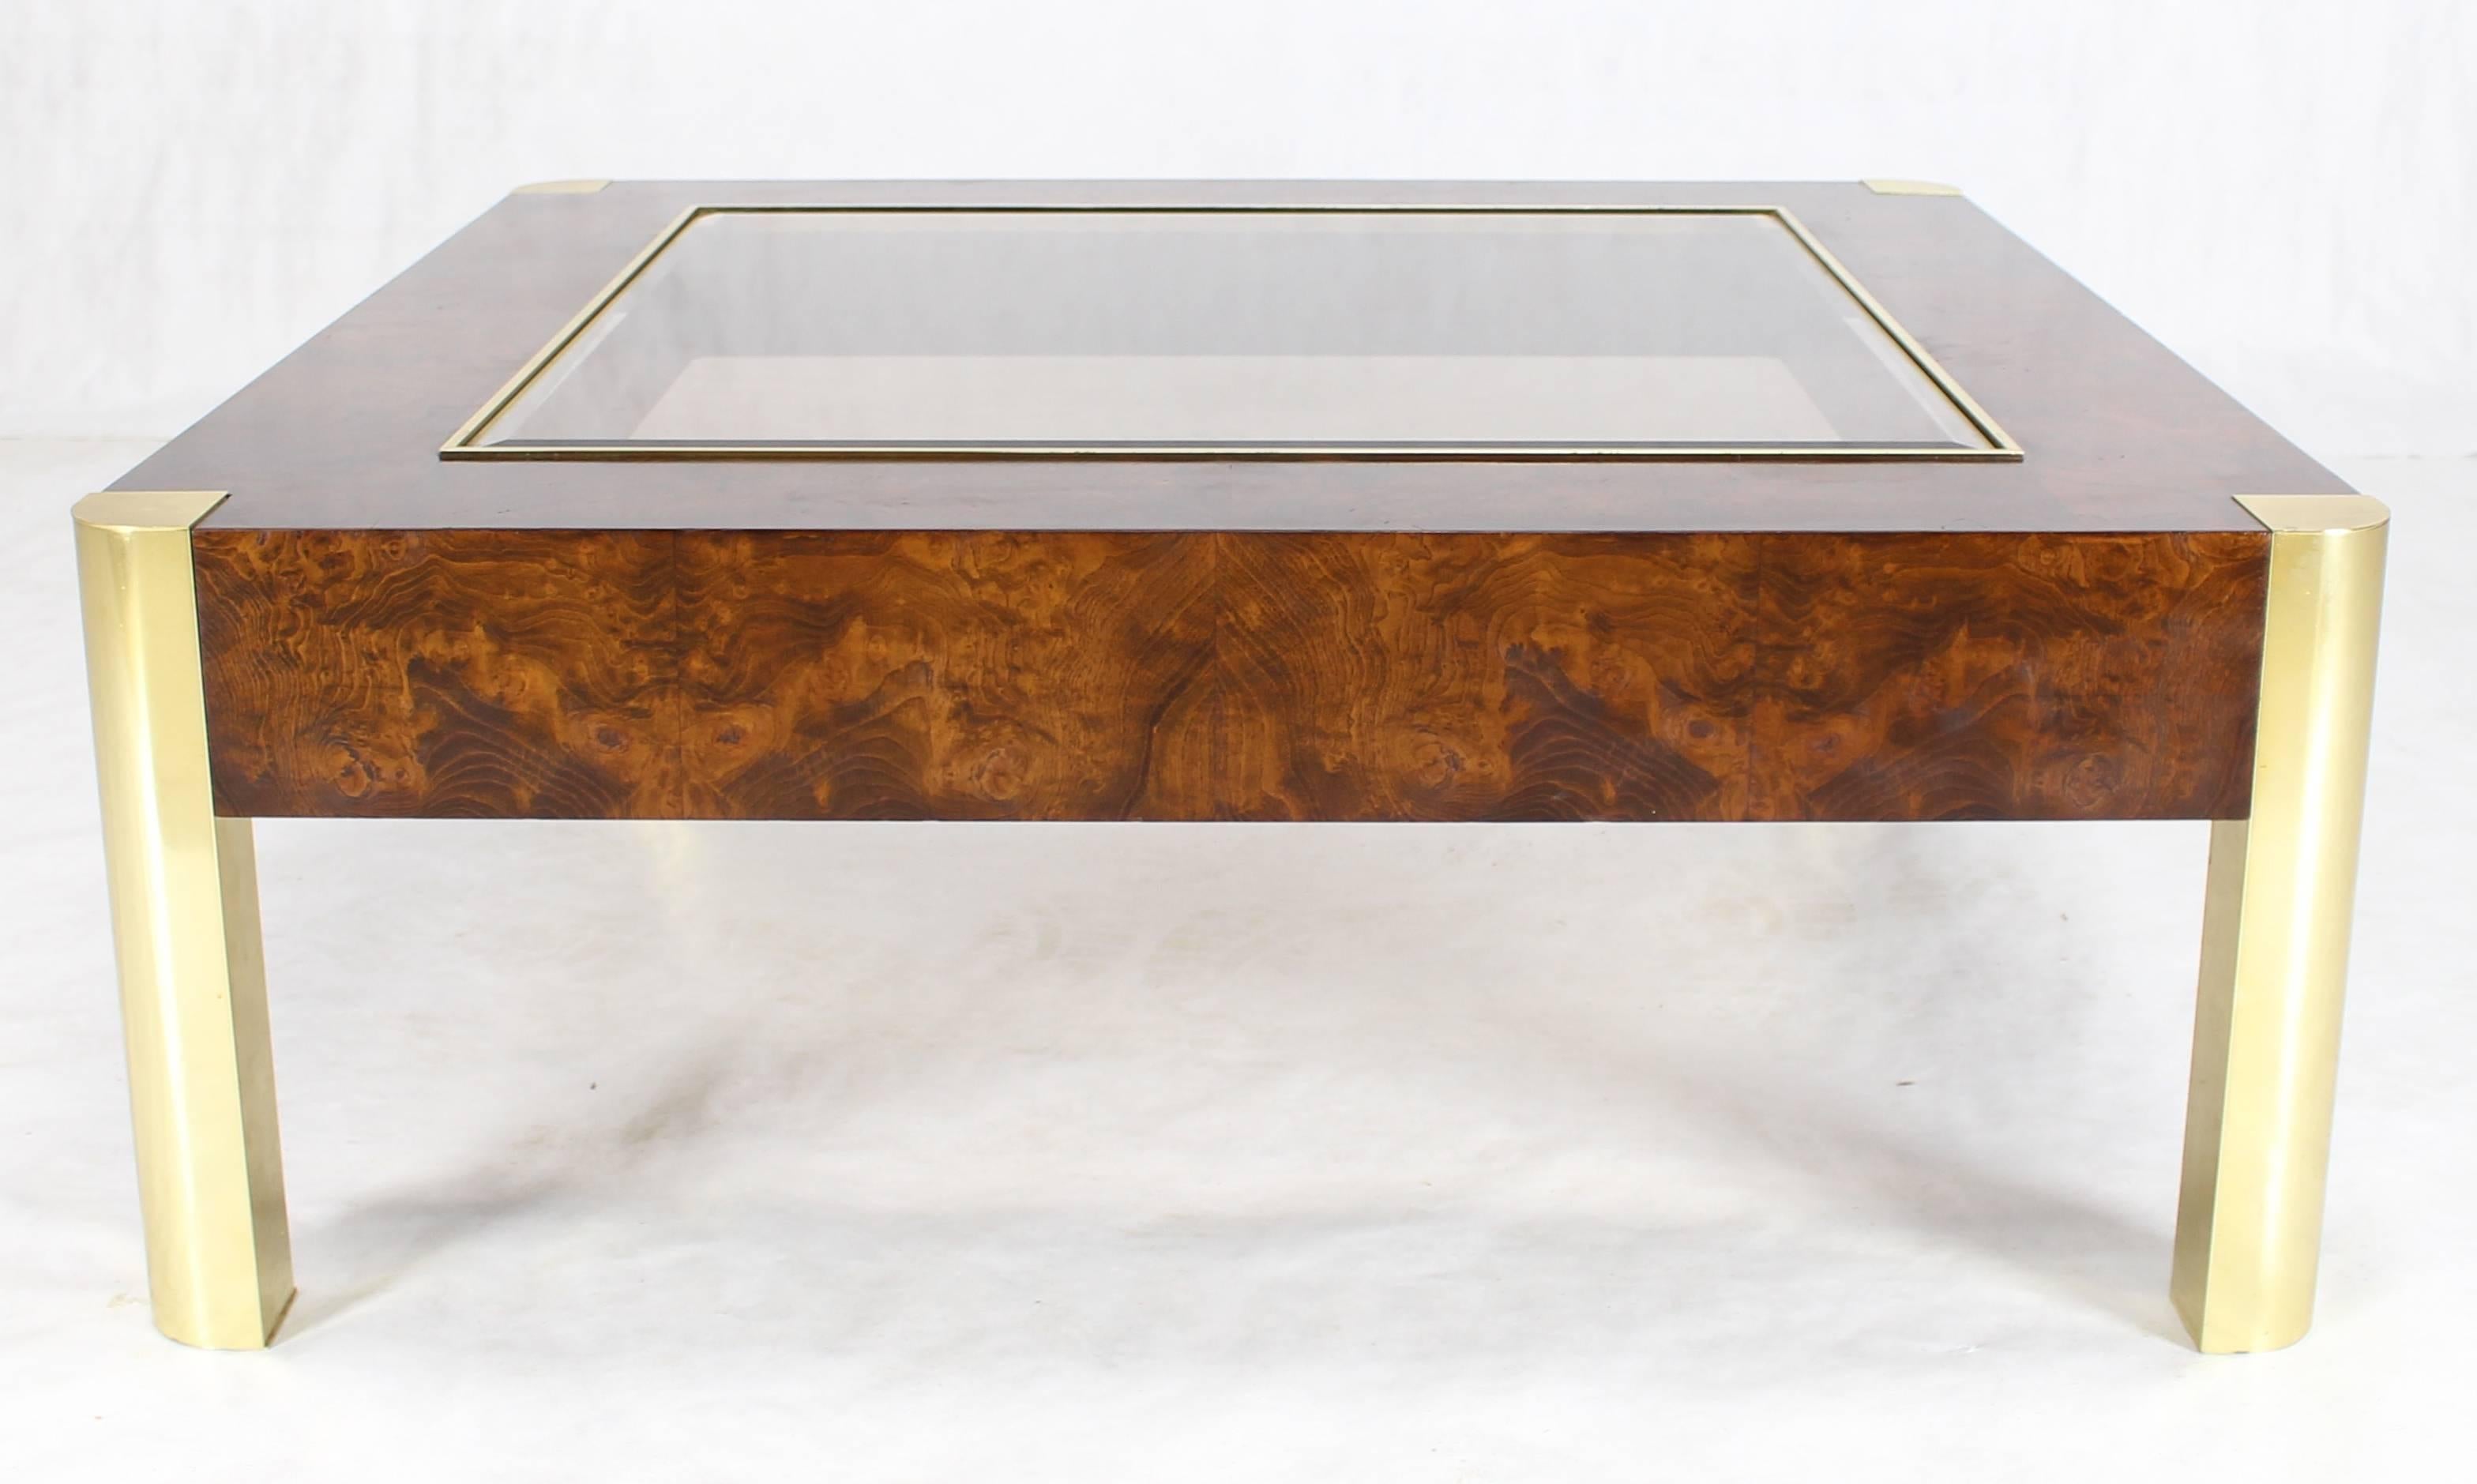 Table basse carrée en bois de ronce massif avec plateau en verre, de style Mid-Century Modern. Magnifique motif de ronce de bois. Belles proportions du design.